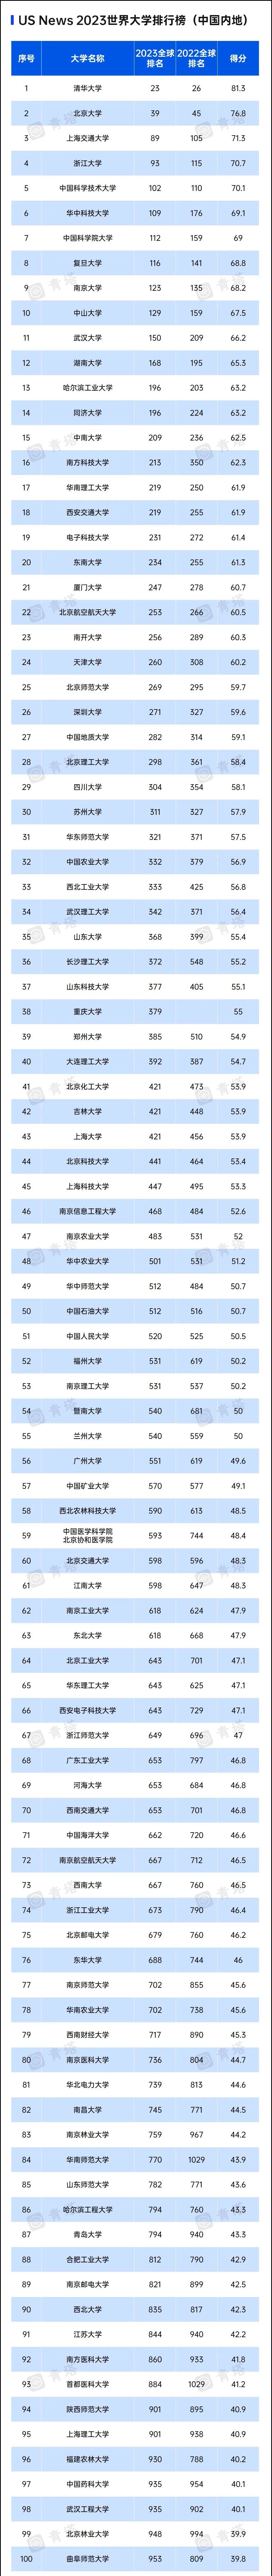 中国大学世界排名最新权威排名表前100名